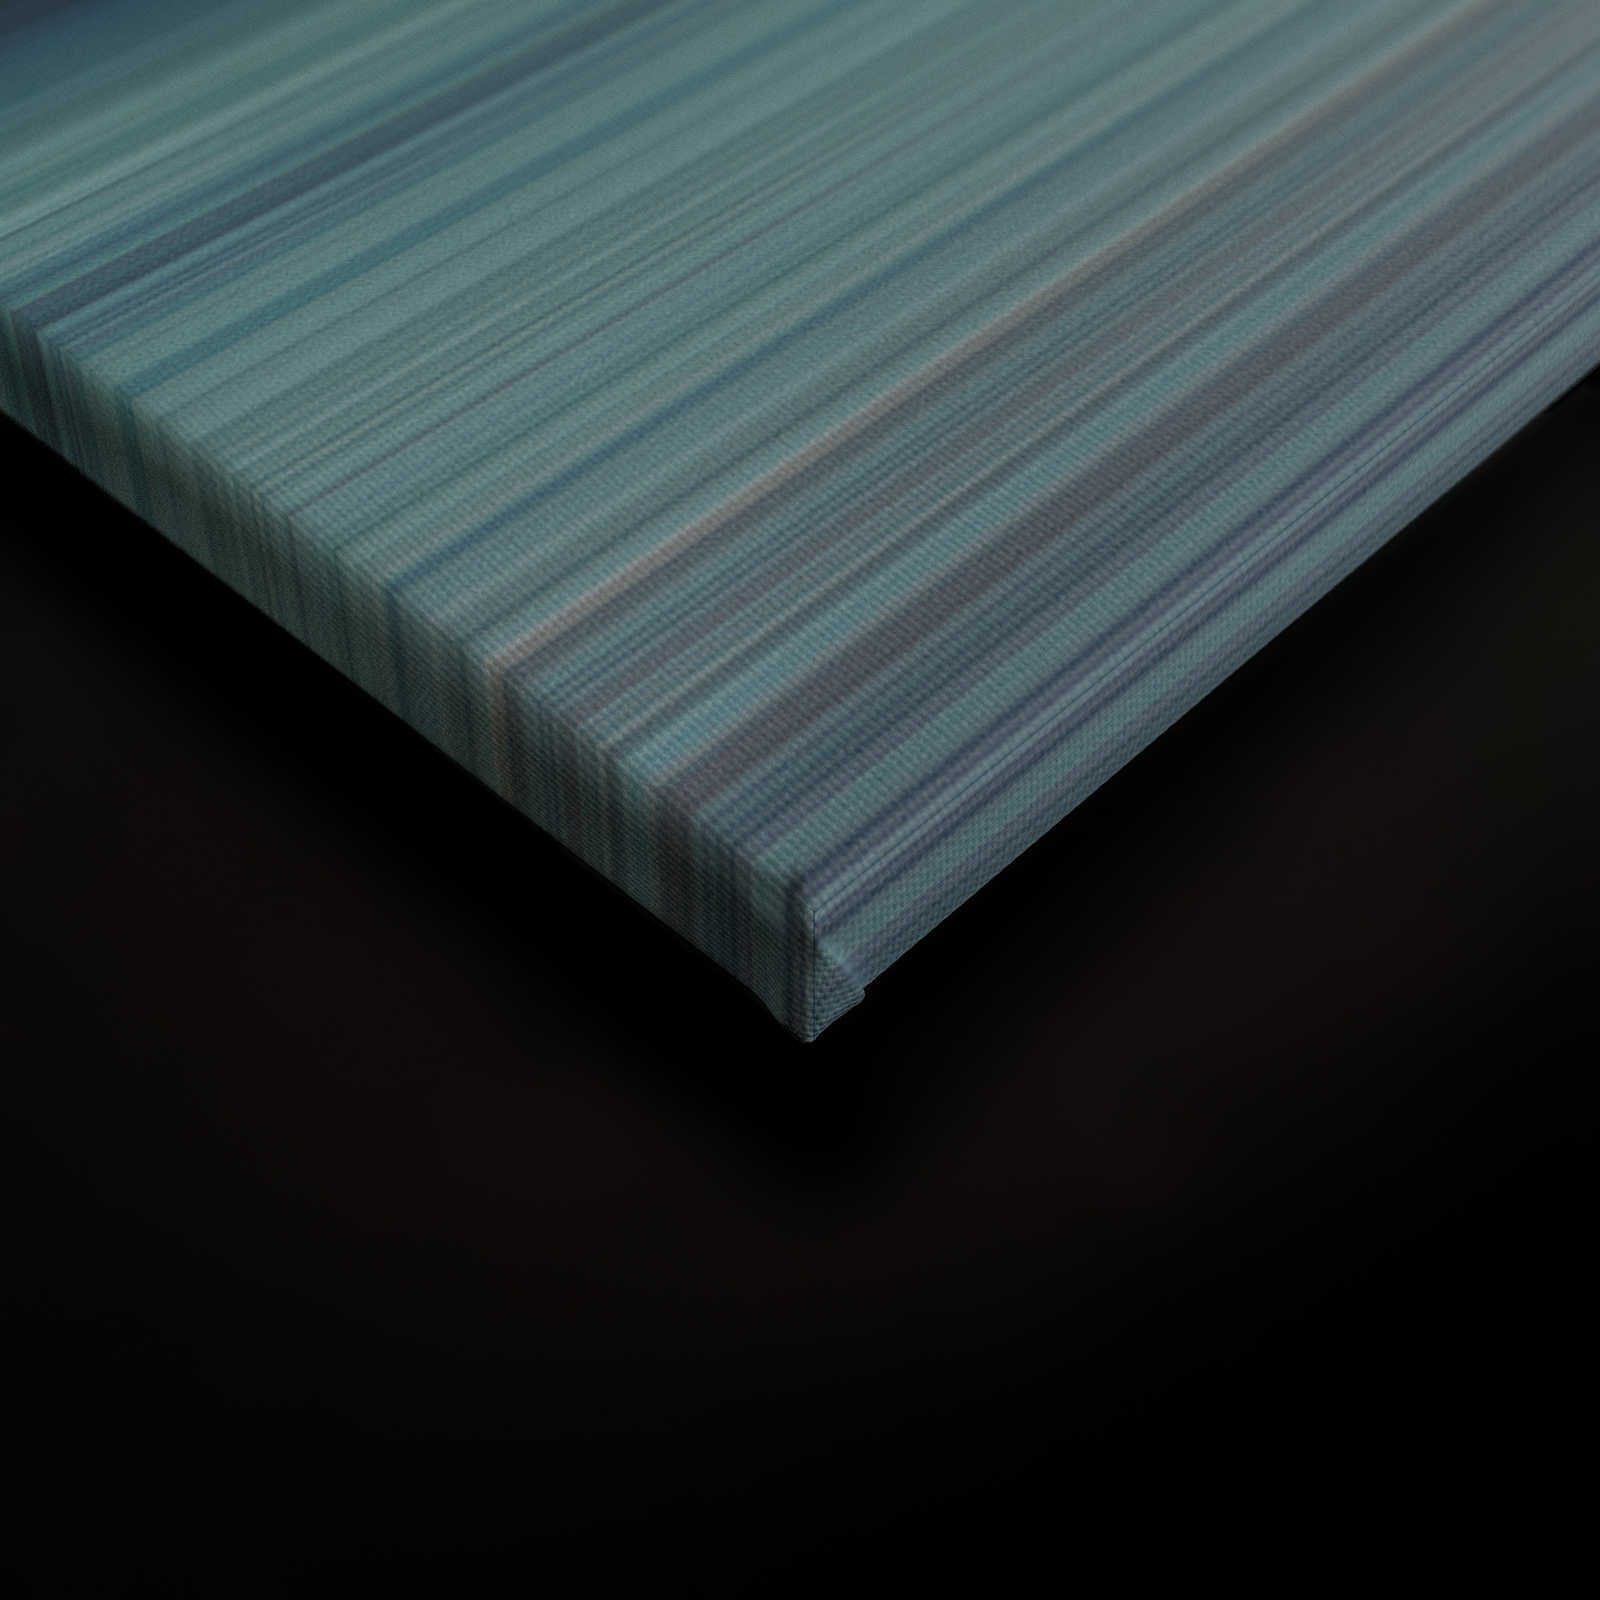             Horizon 1 - Canvas schilderij abstract landschap in blauw - 1,20 m x 0,80 m
        